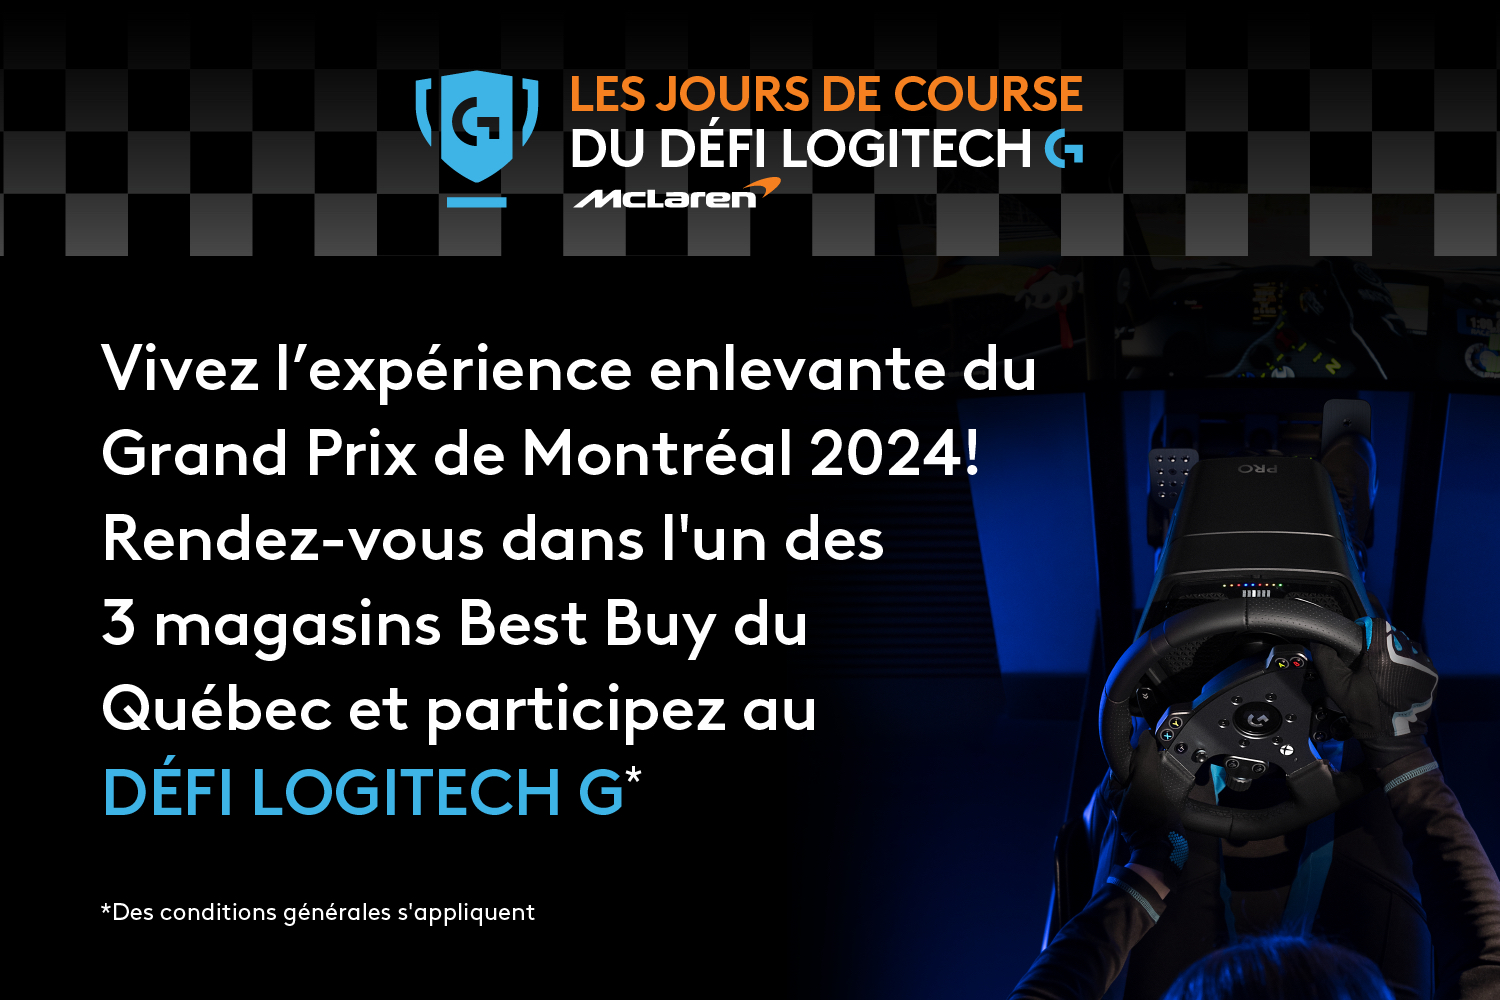 Les jours de course du défi Logitech G dans certains magasins Best Buy au Québec. Vivez l'expérience enlevante du Grand Prix de Montréal 2024! 